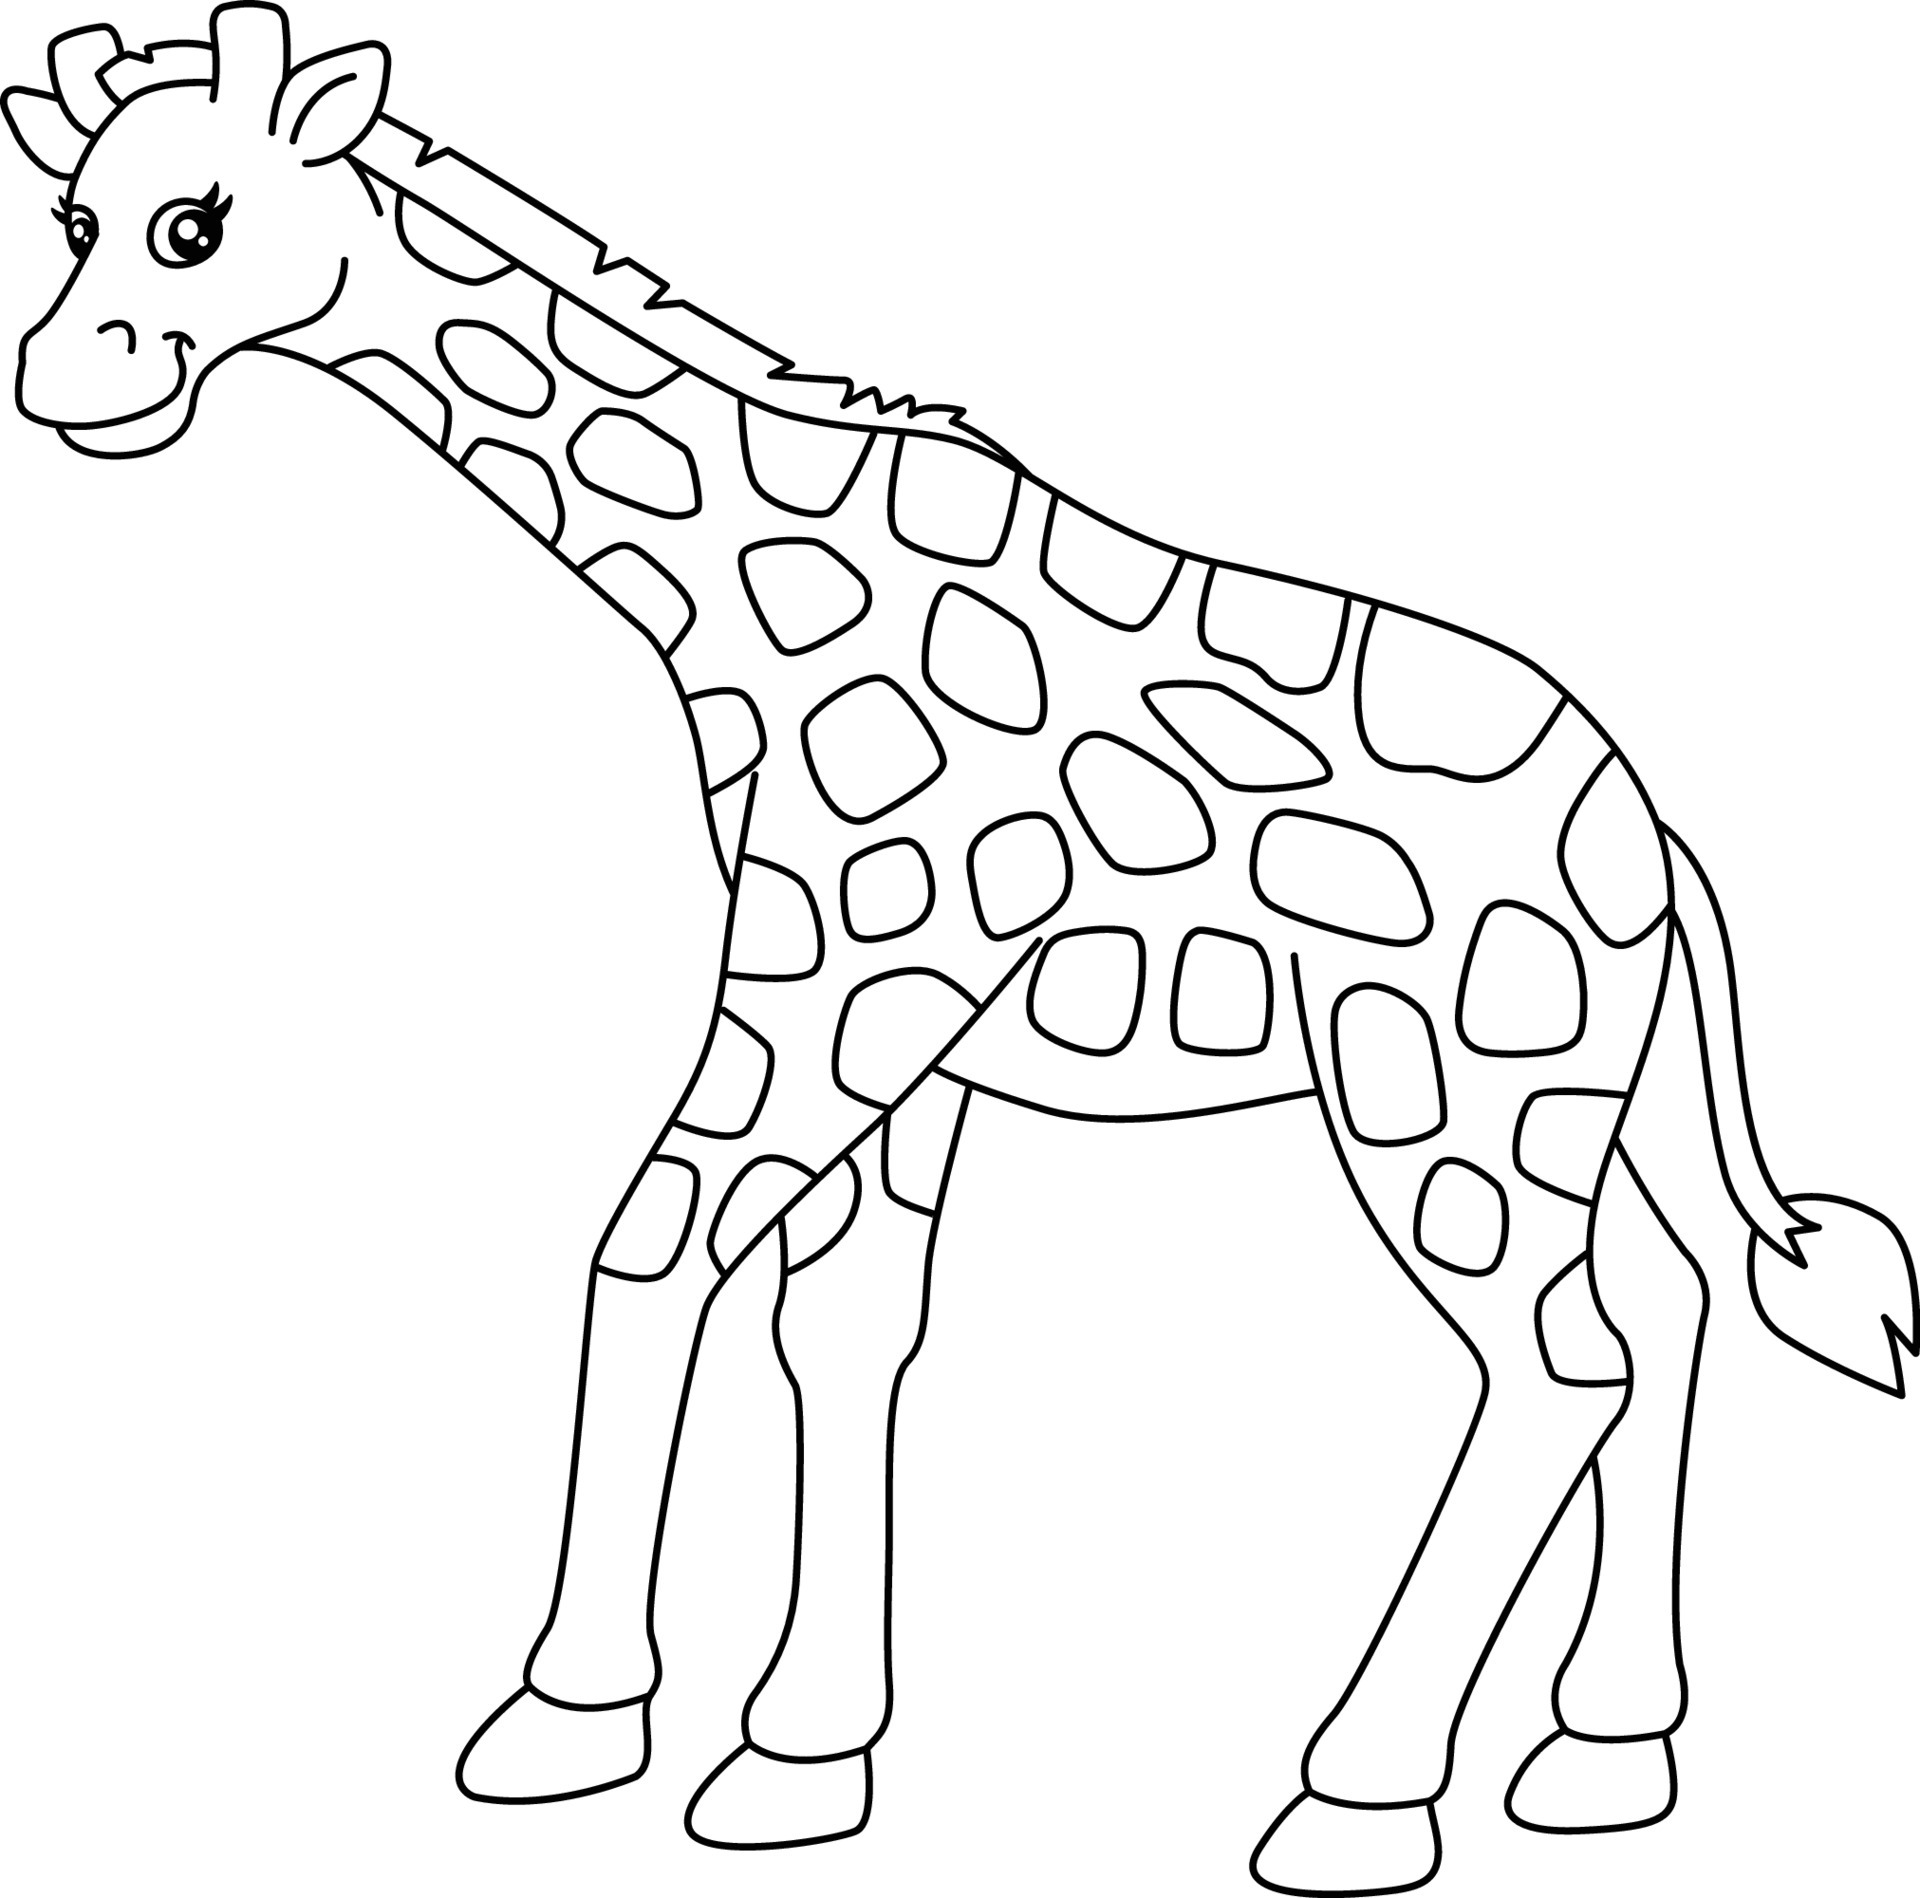 Великолепная раскраска жирафа для дошкольников